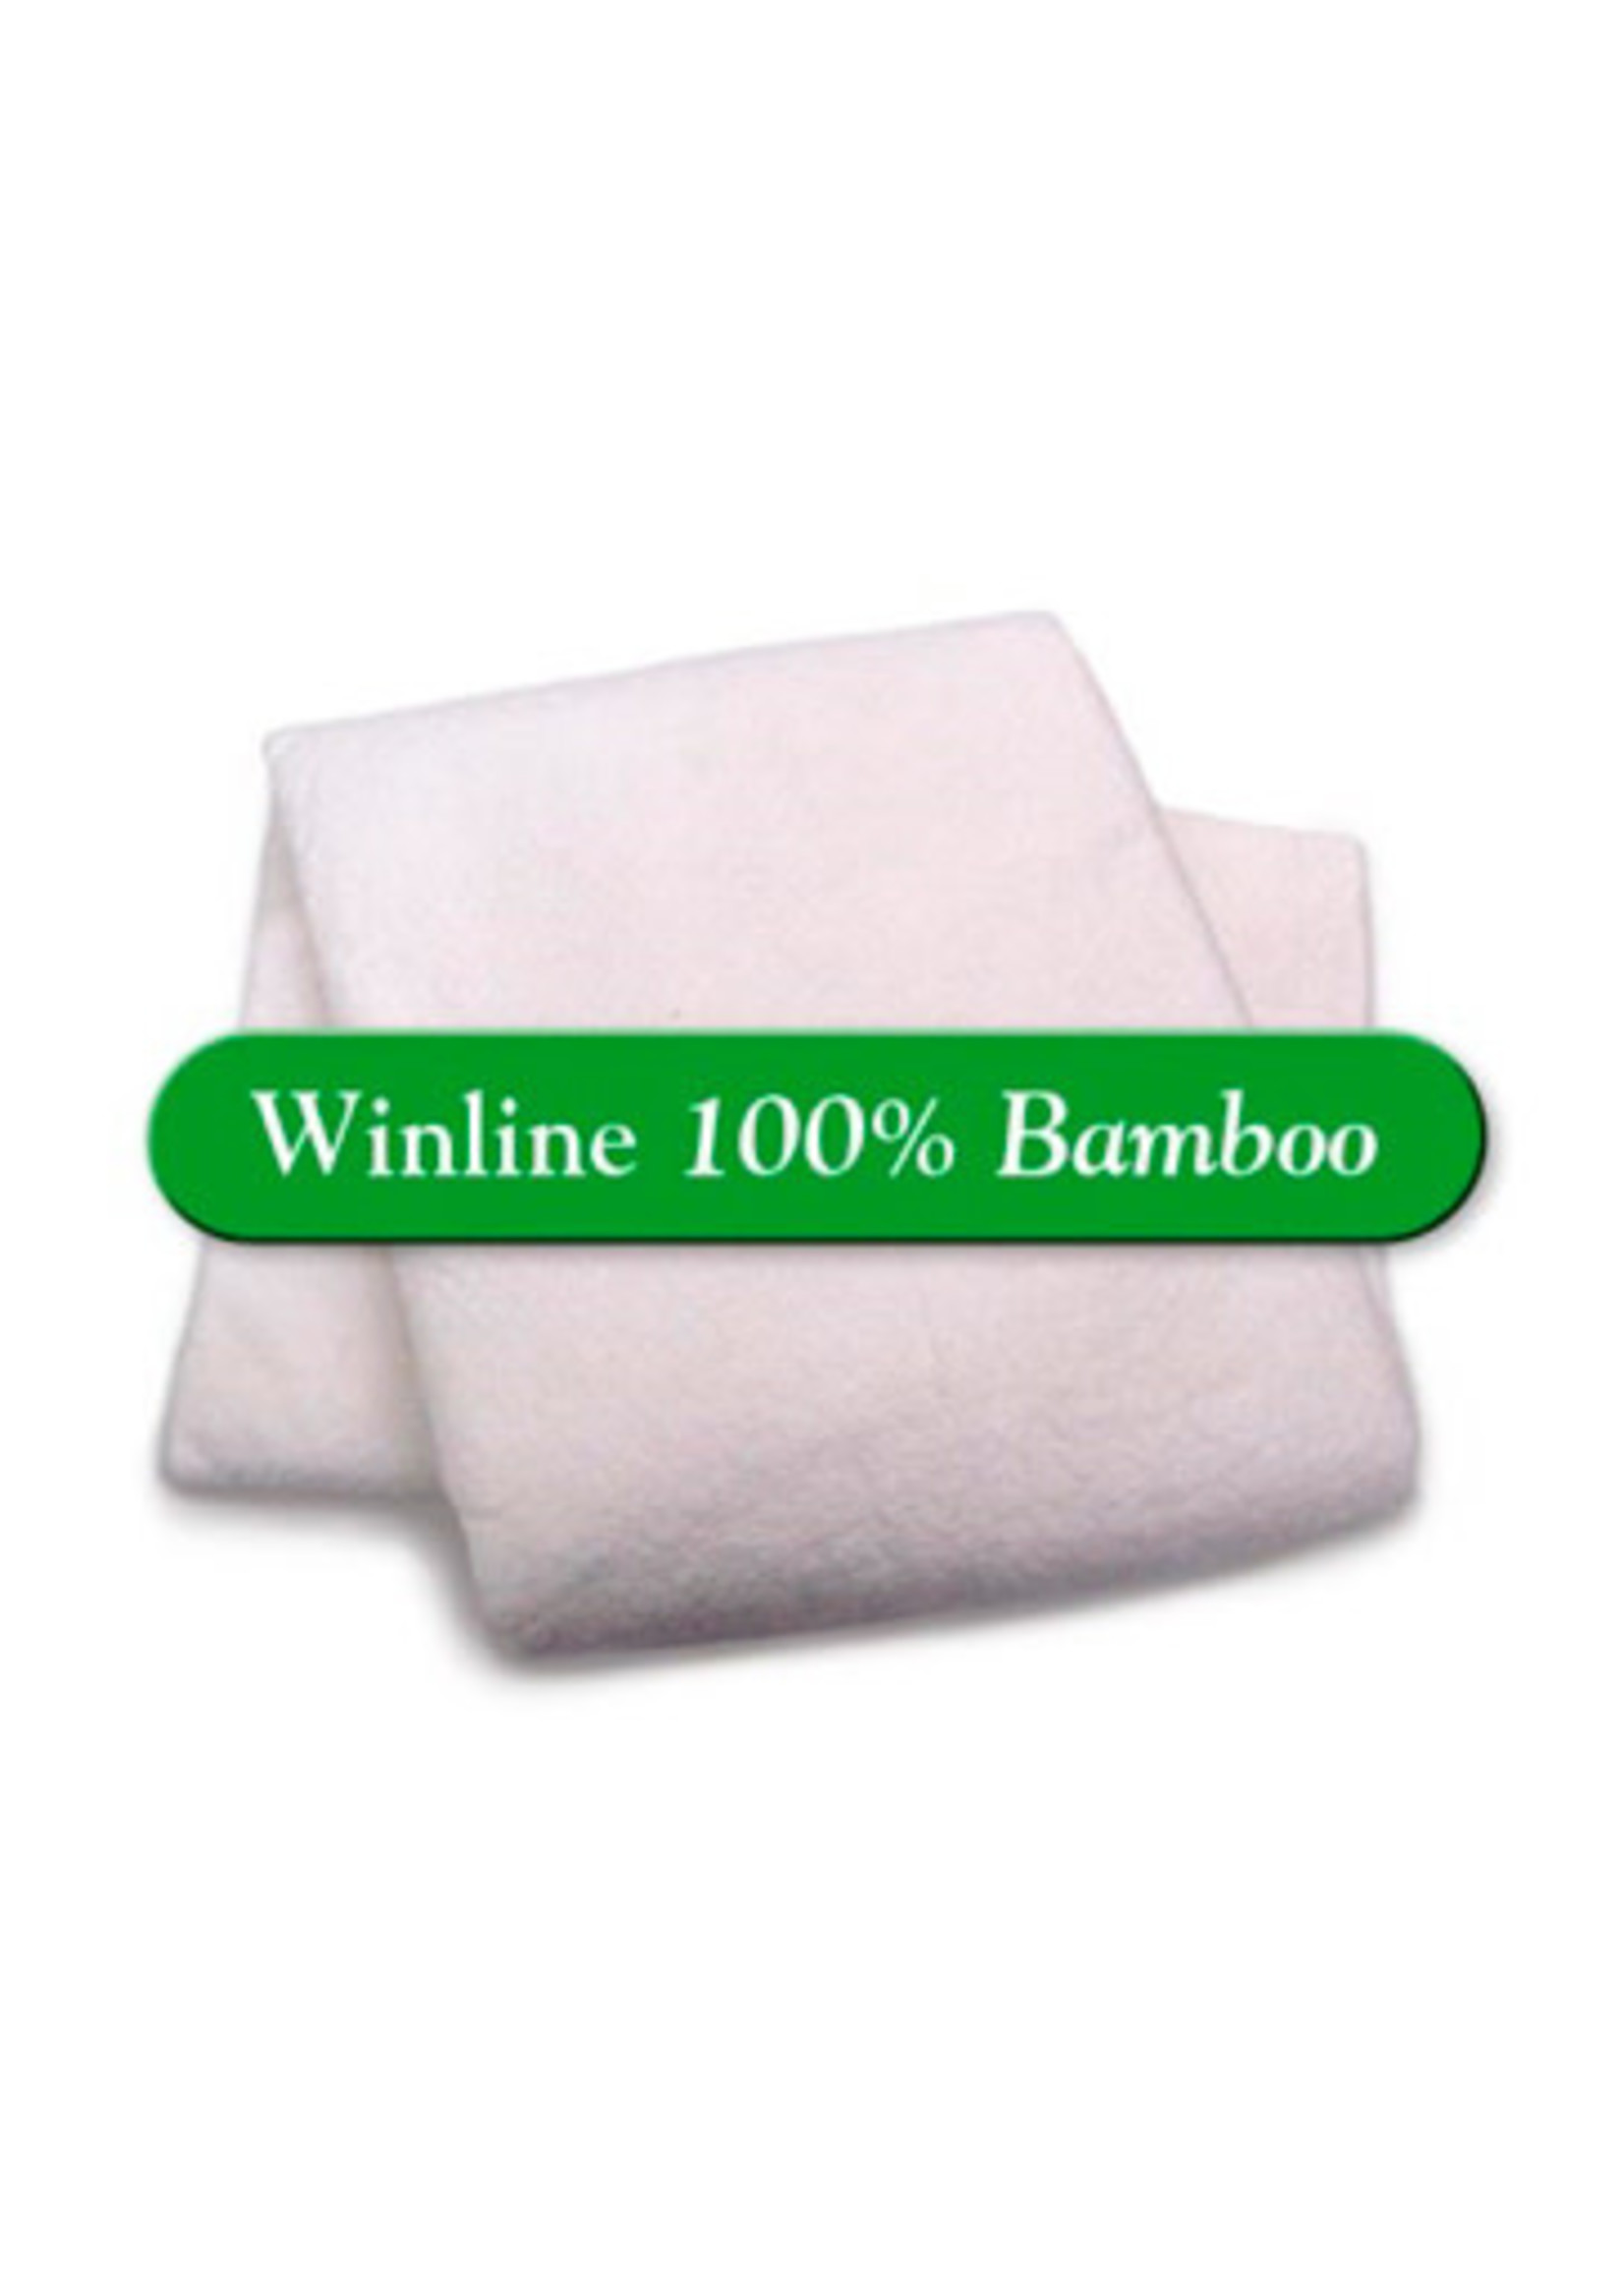 Winline Bamboe - 6 oz 100% Bamboo - Van de rol (per 10 cm) 300 cm breed